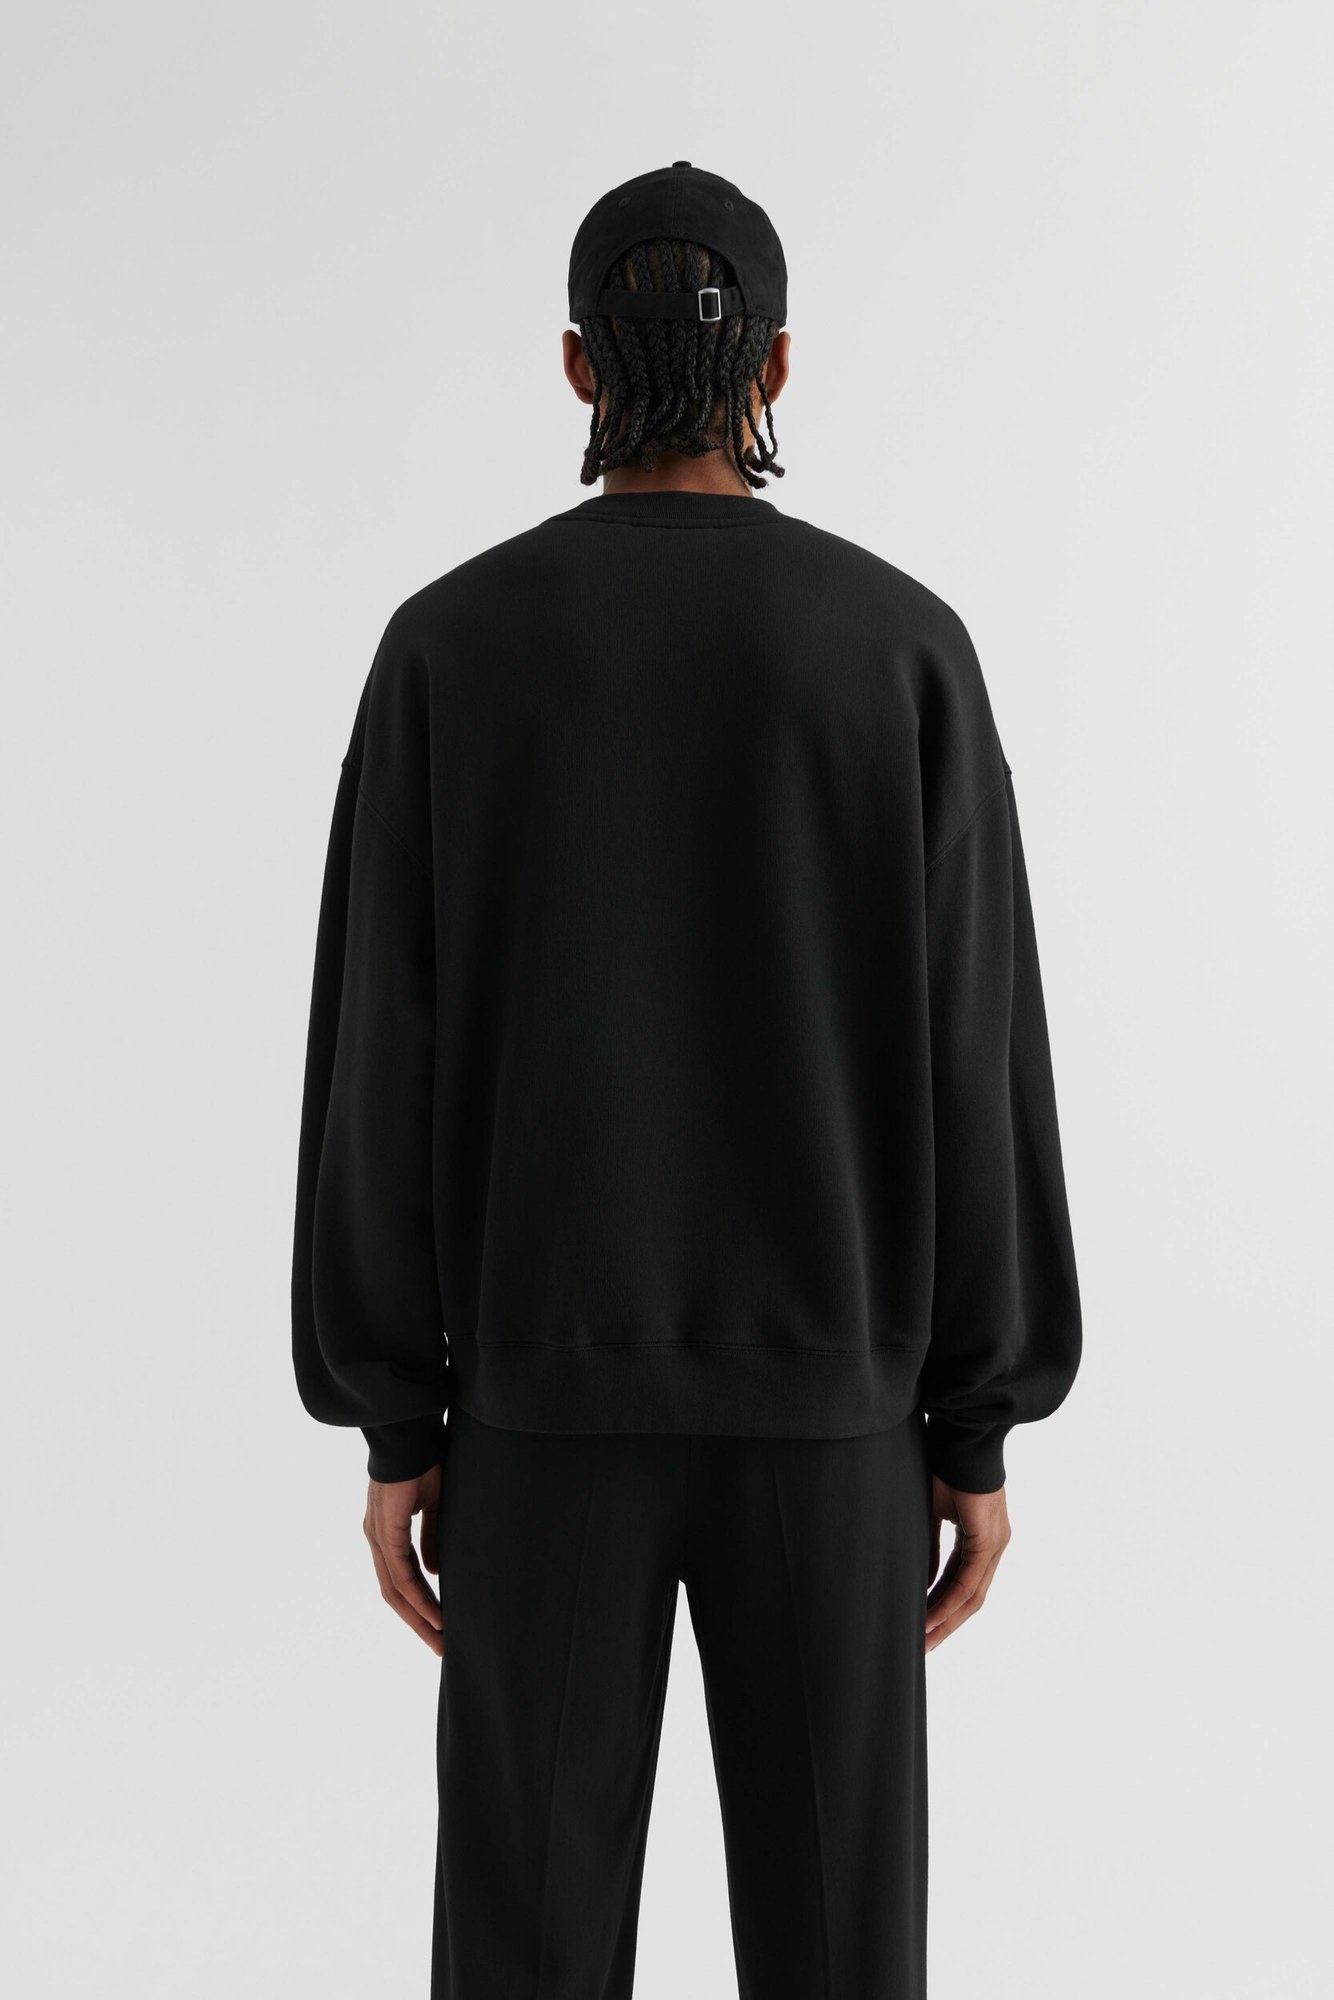 AXEL ARIGATO Signature Sweatshirt in Black S